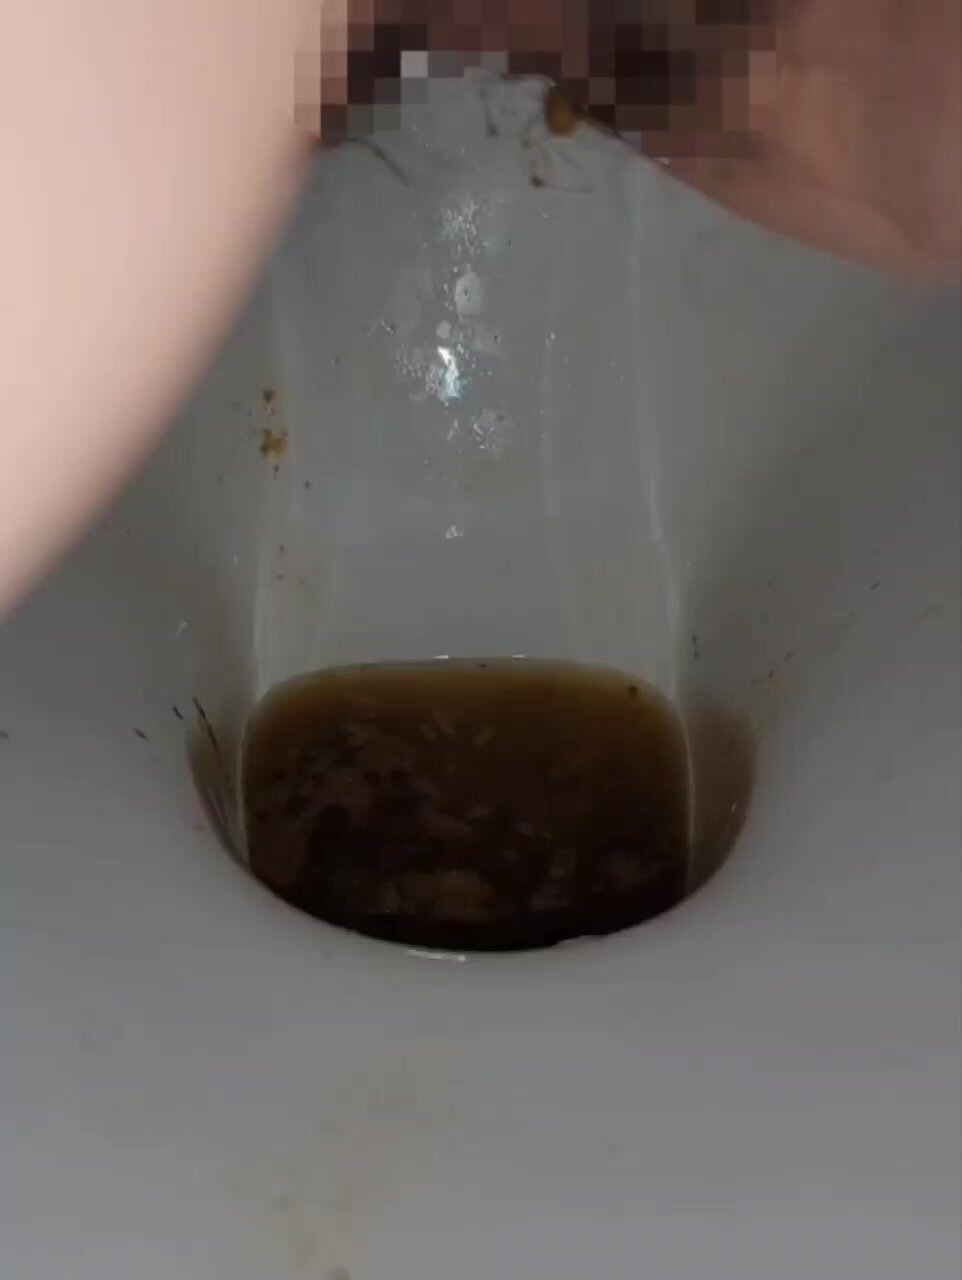 diarrhea7 - video 2